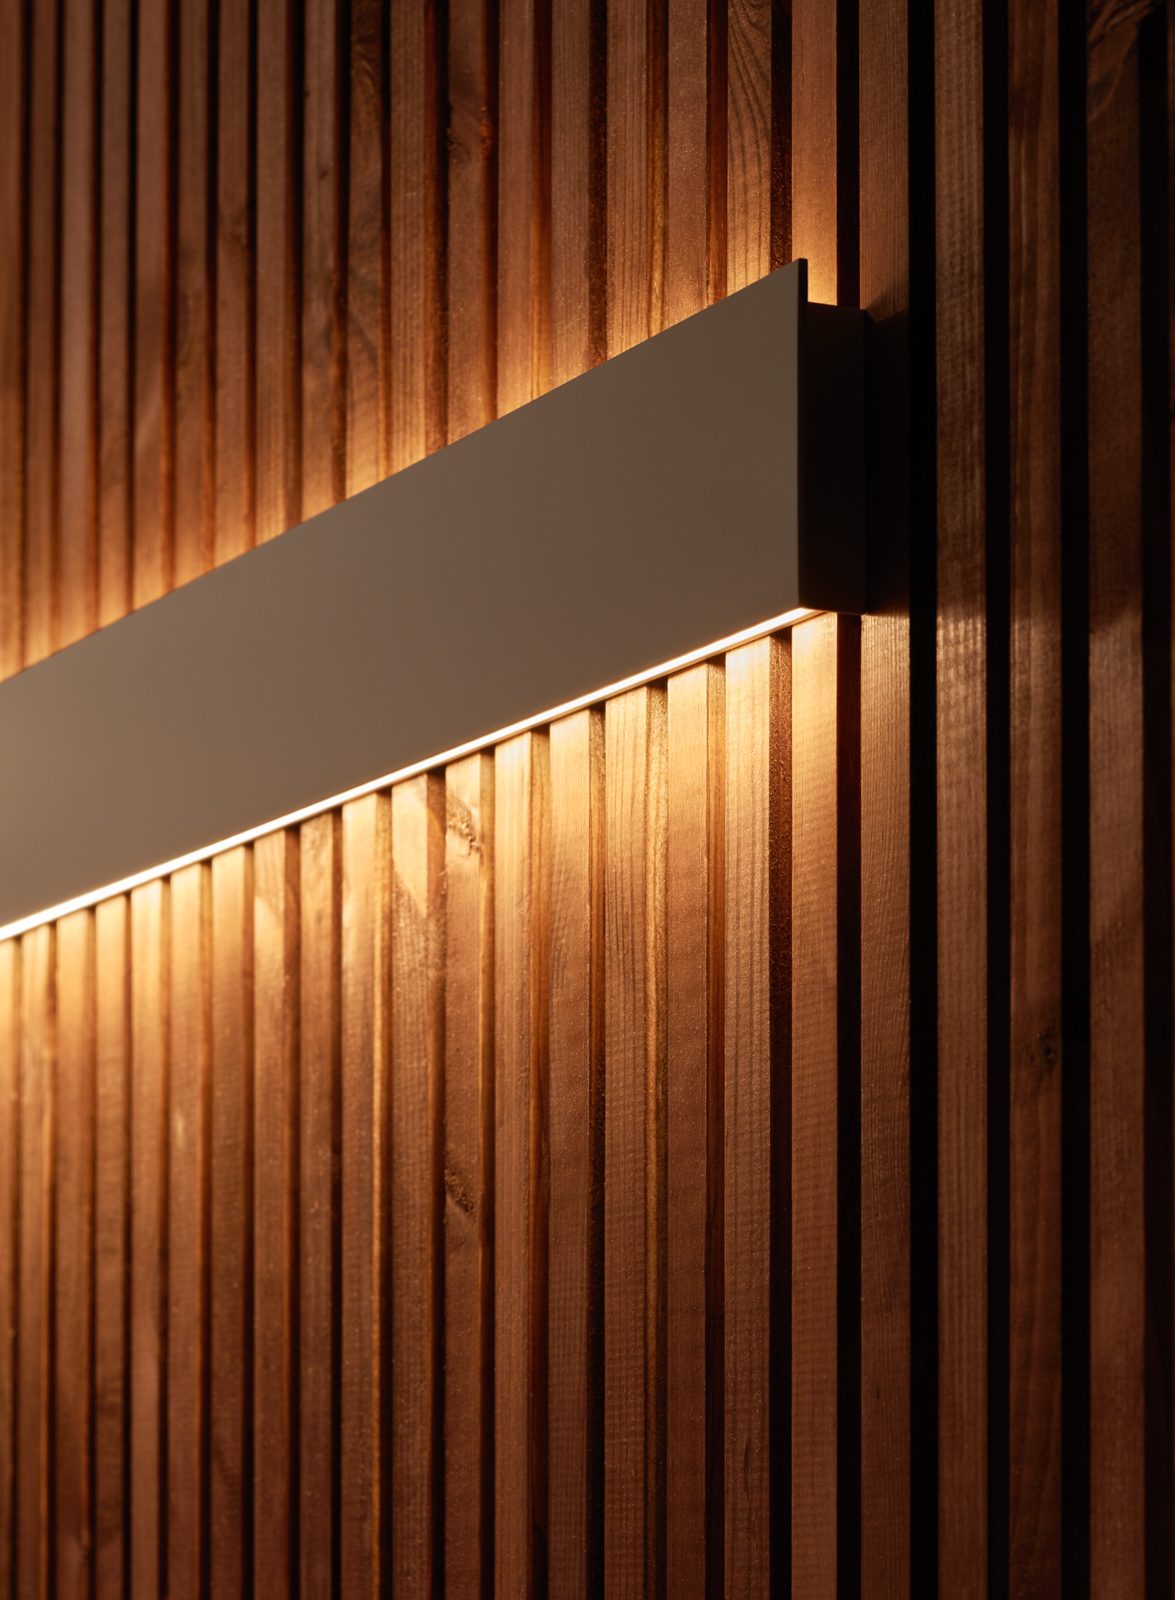 Aplique de pared led lineal Fino de iluminación indirecta (varios